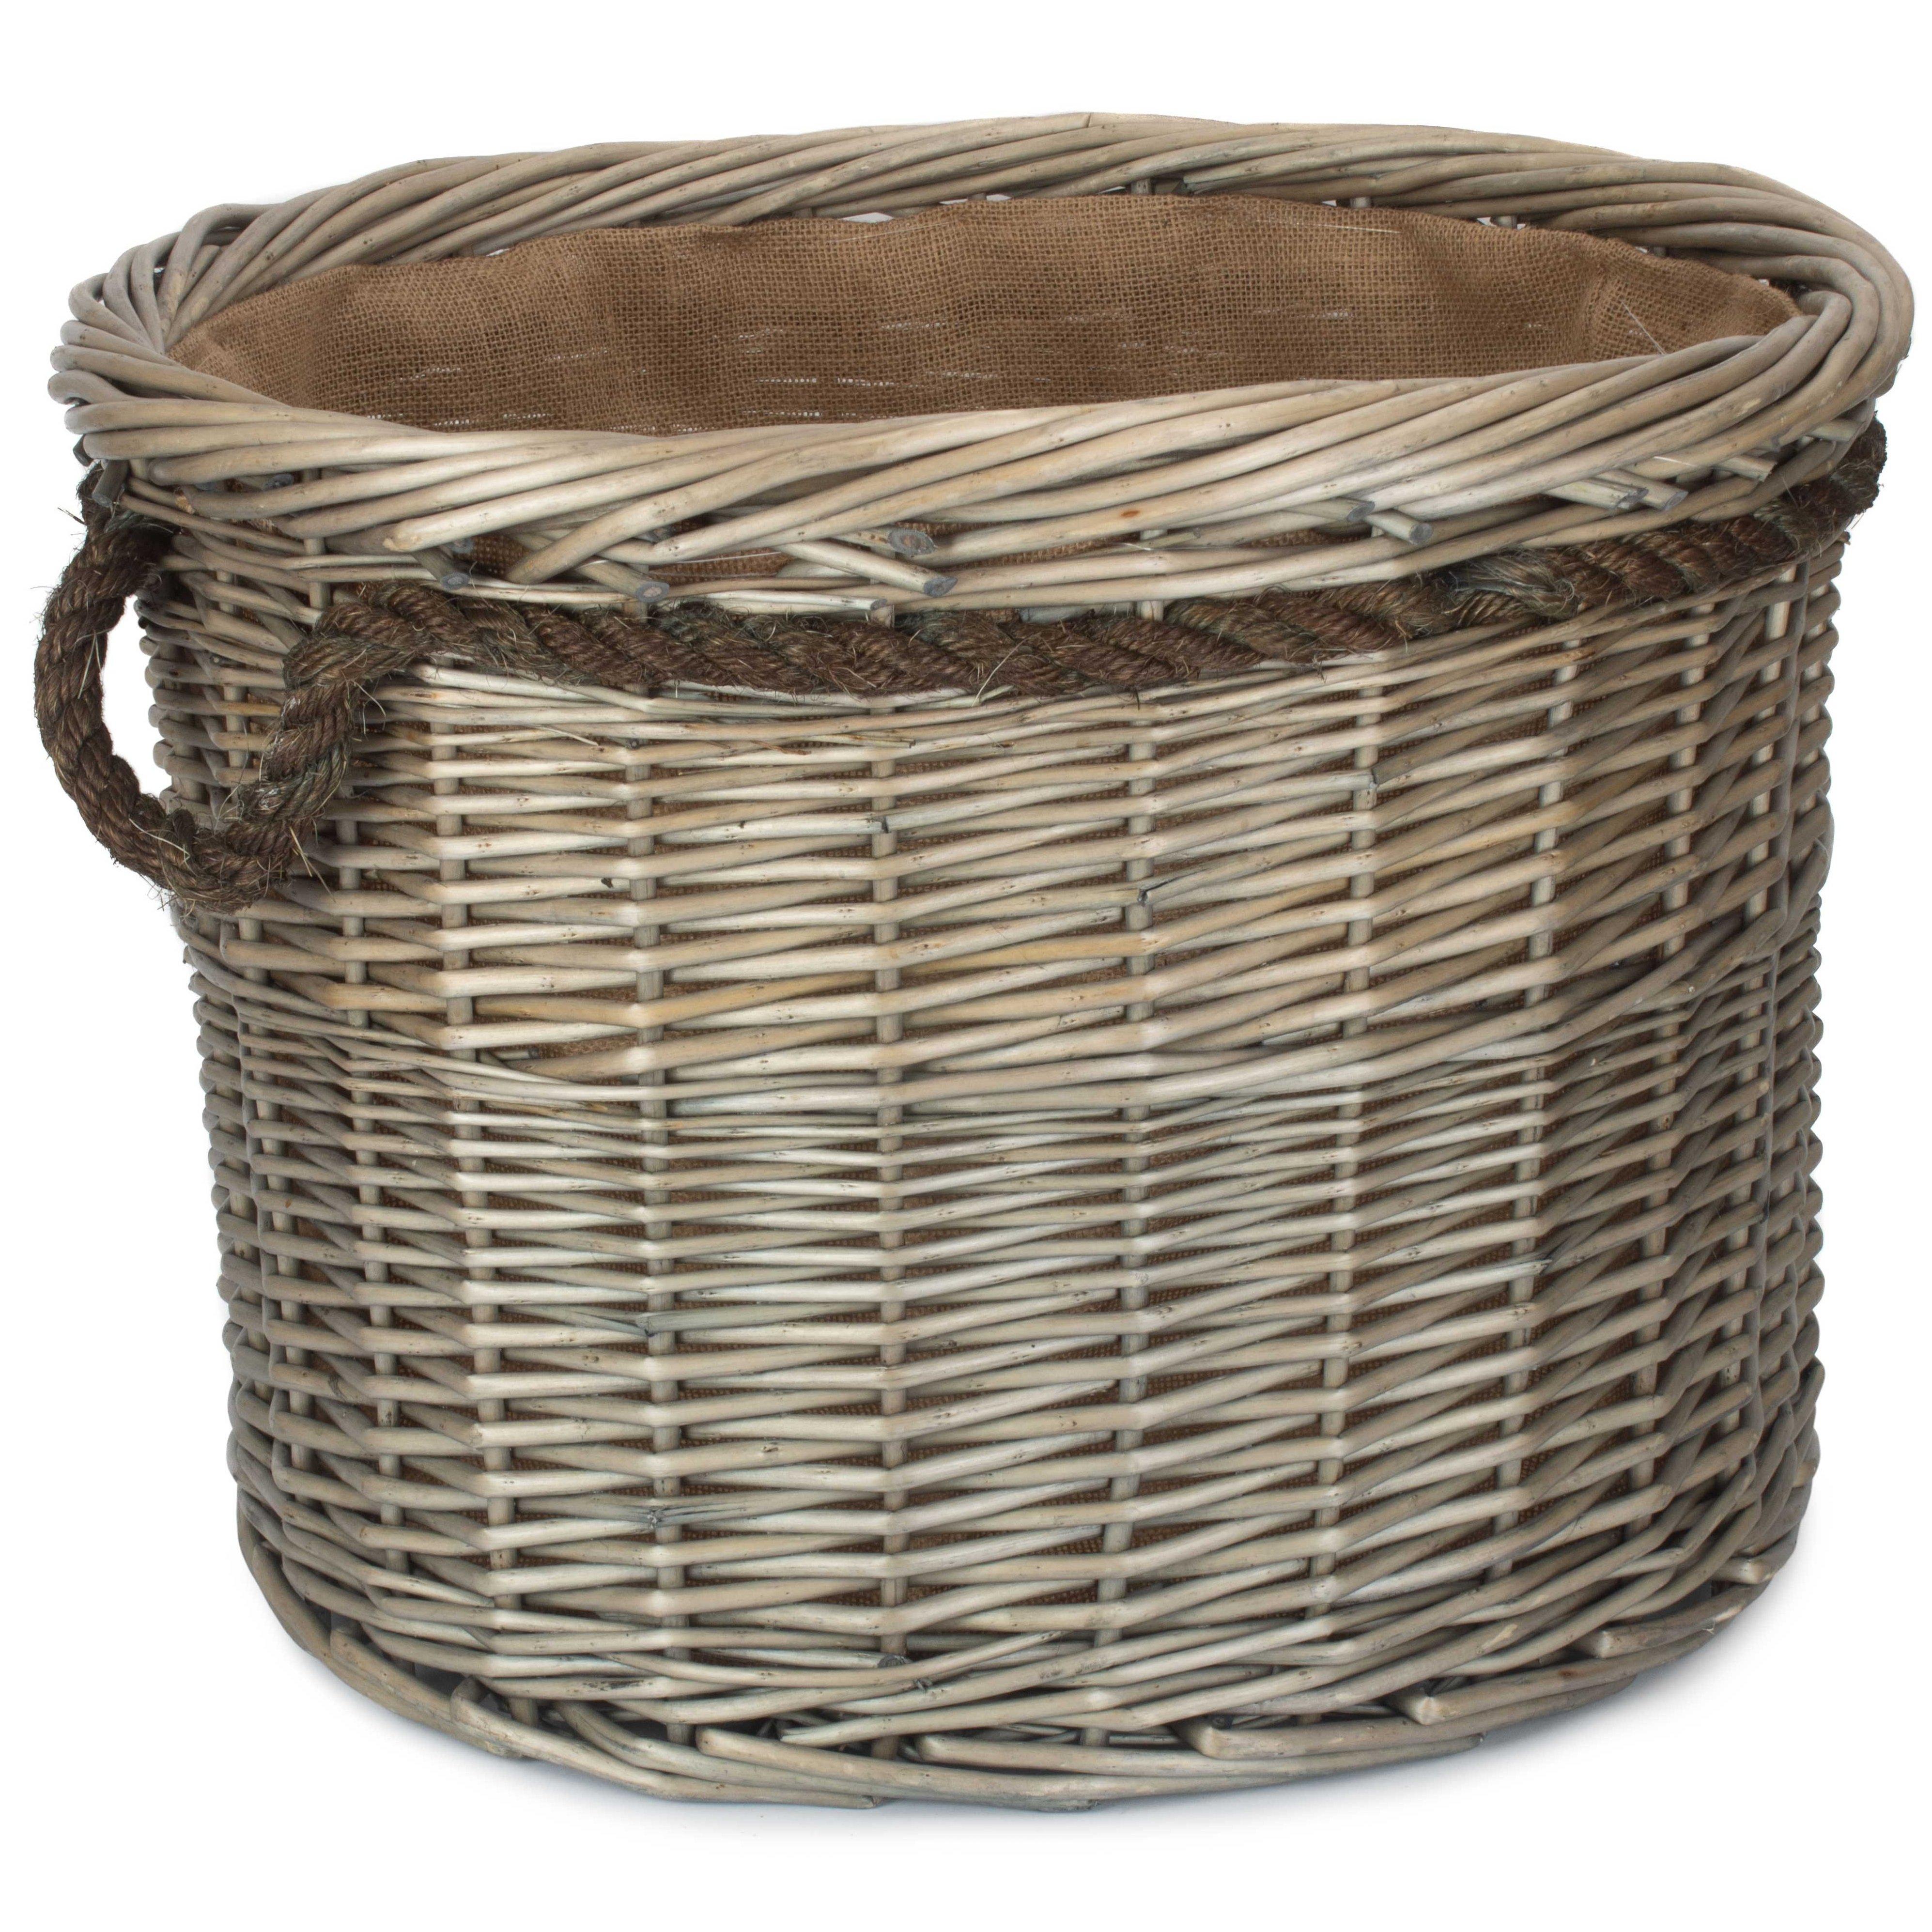 Wicker Rope Handled Antique Wash Round Log Basket